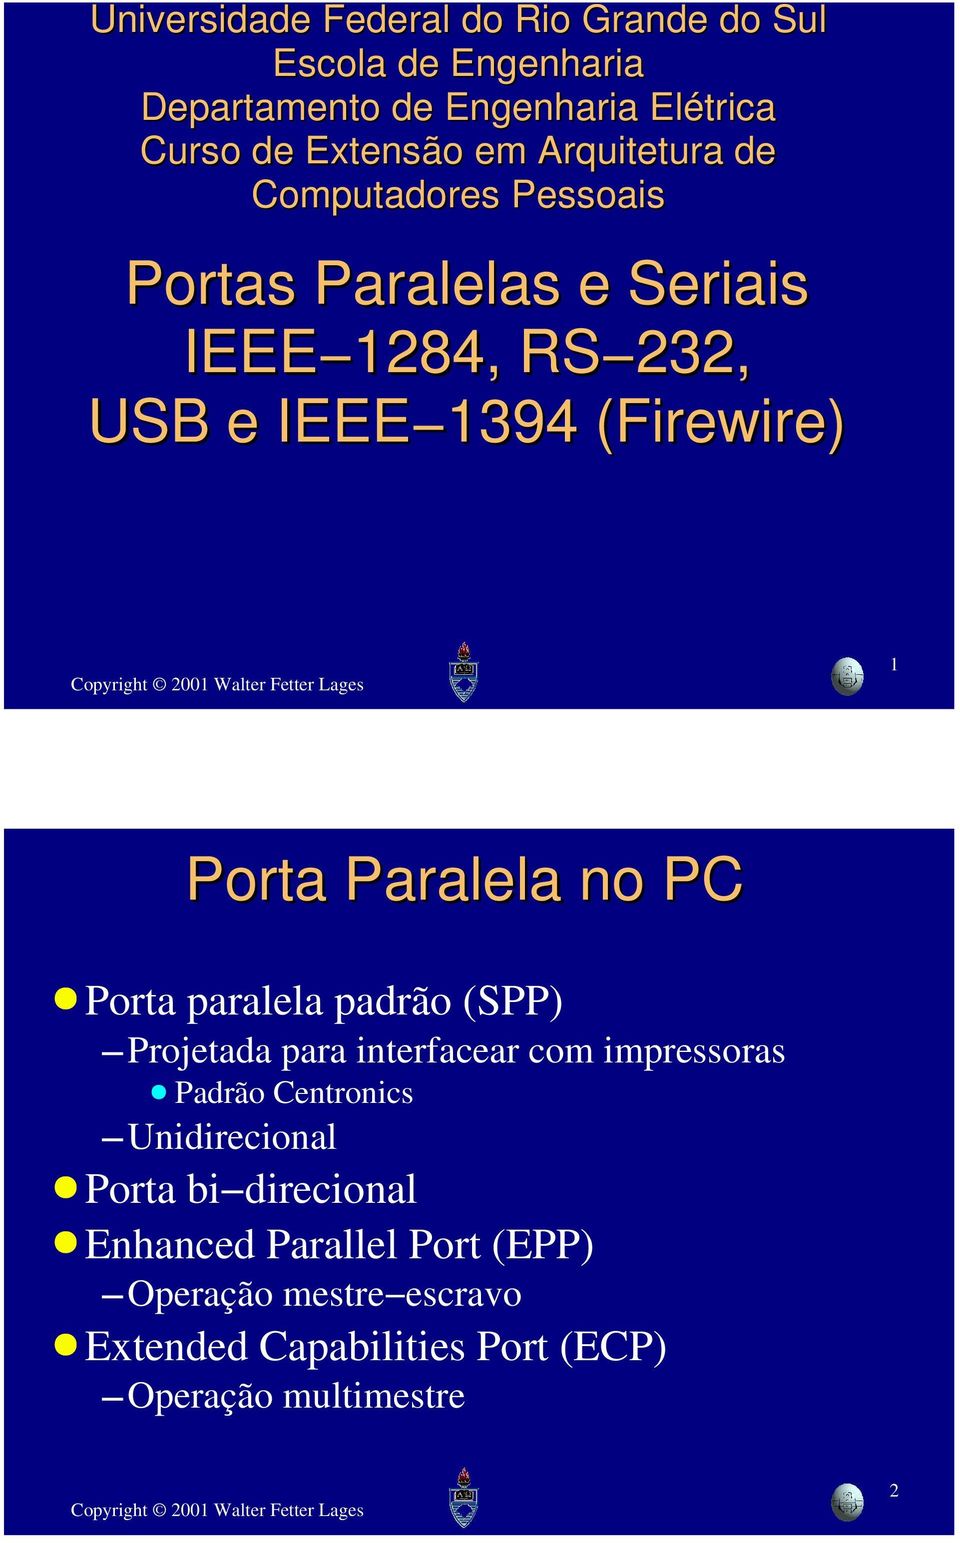 Paralela no PC Porta paralela padrão (SPP) Projetada para interfacear com impressoras Padrão Centronics Unidirecional